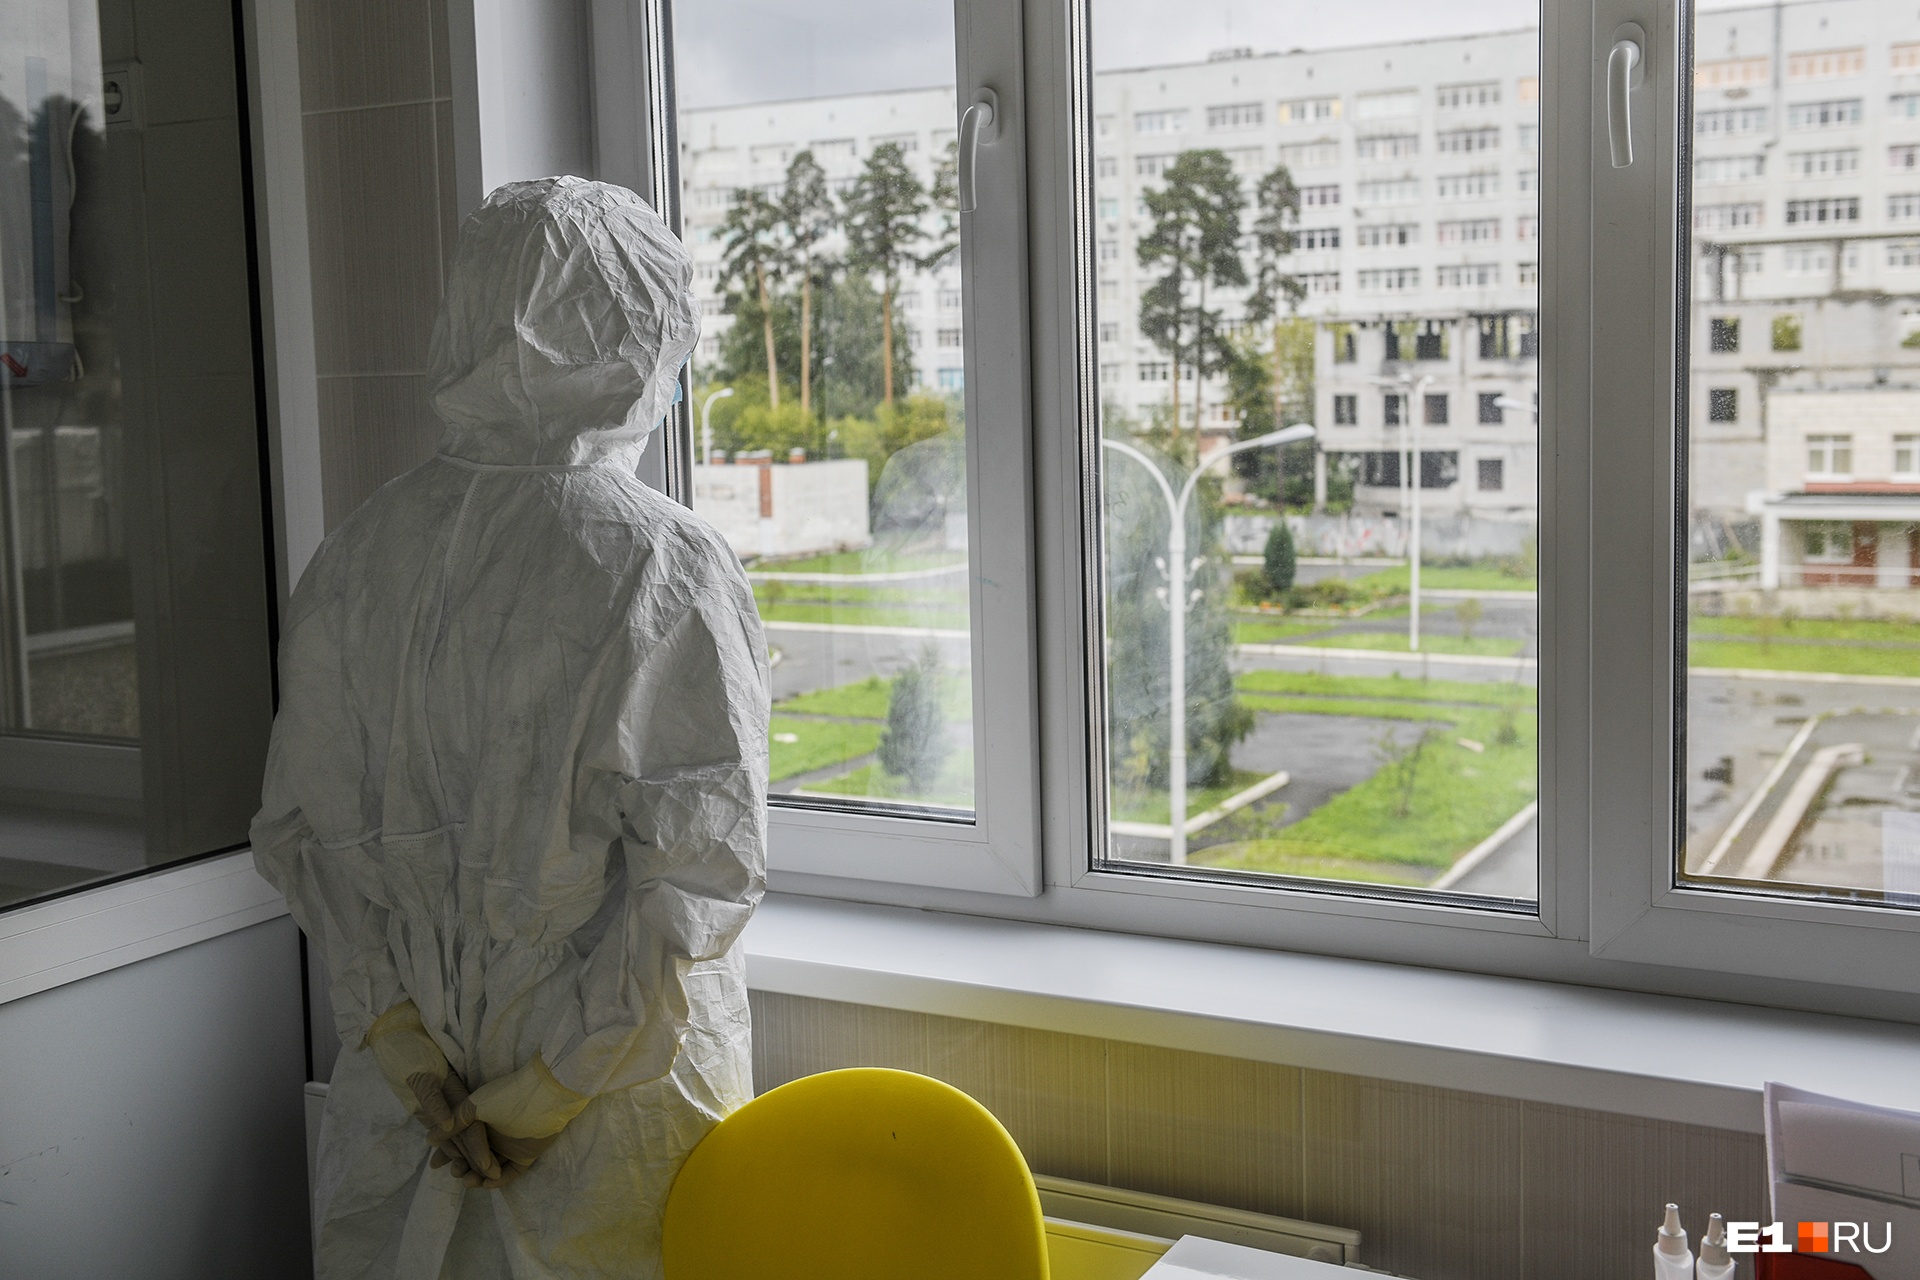 Больше всего новых случаев коронавируса снова выявили в Кемерово